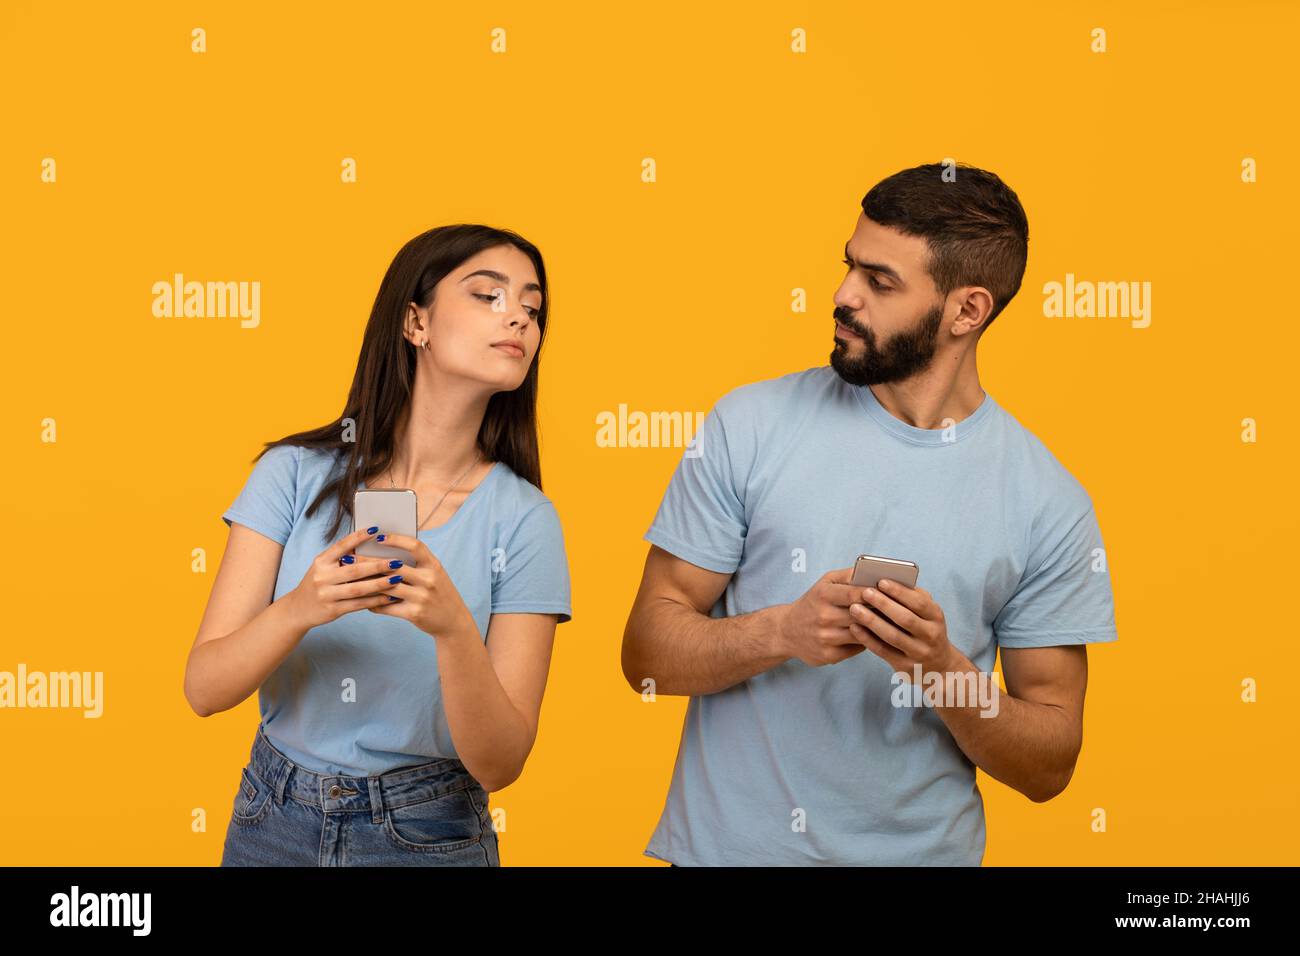 Datenschutzkonzept. Arabische Dame versucht, auf das Smartphone ihres Freundes zu schauen, Kerl versteckt Gadget, gelben Studio-Hintergrund Stockfoto